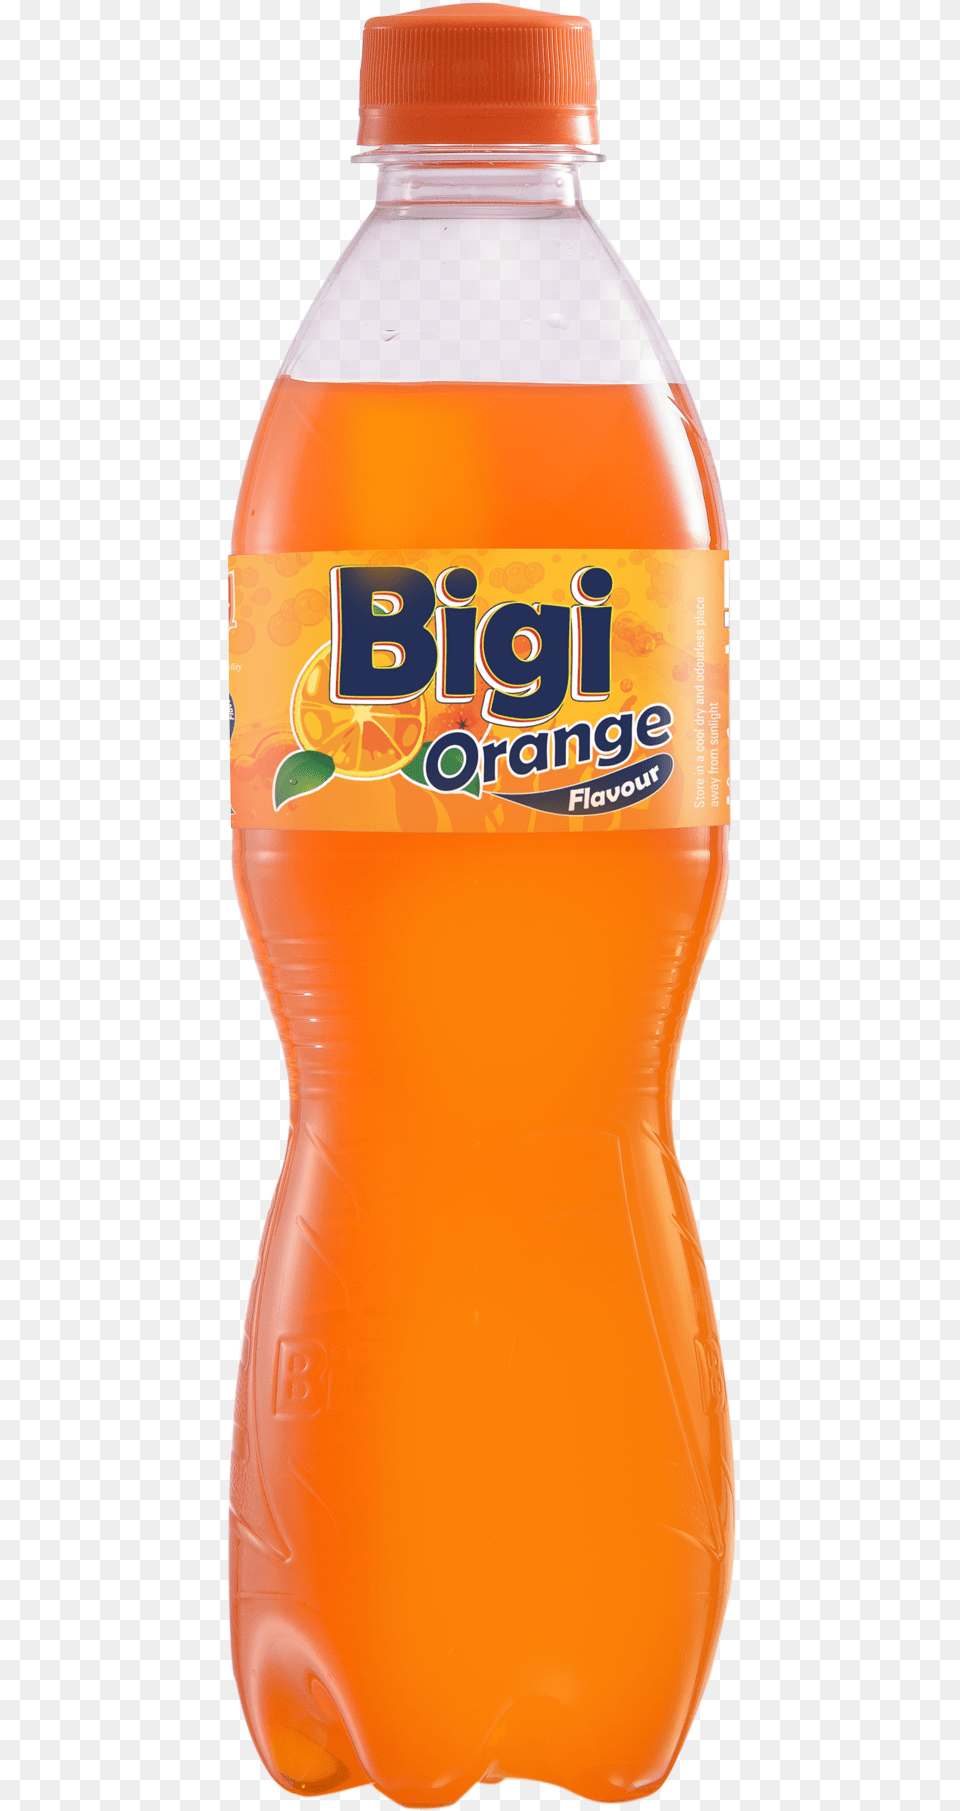 Bigi Orange Orange Soft Drink, Beverage, Juice, Bottle, Pop Bottle Png Image